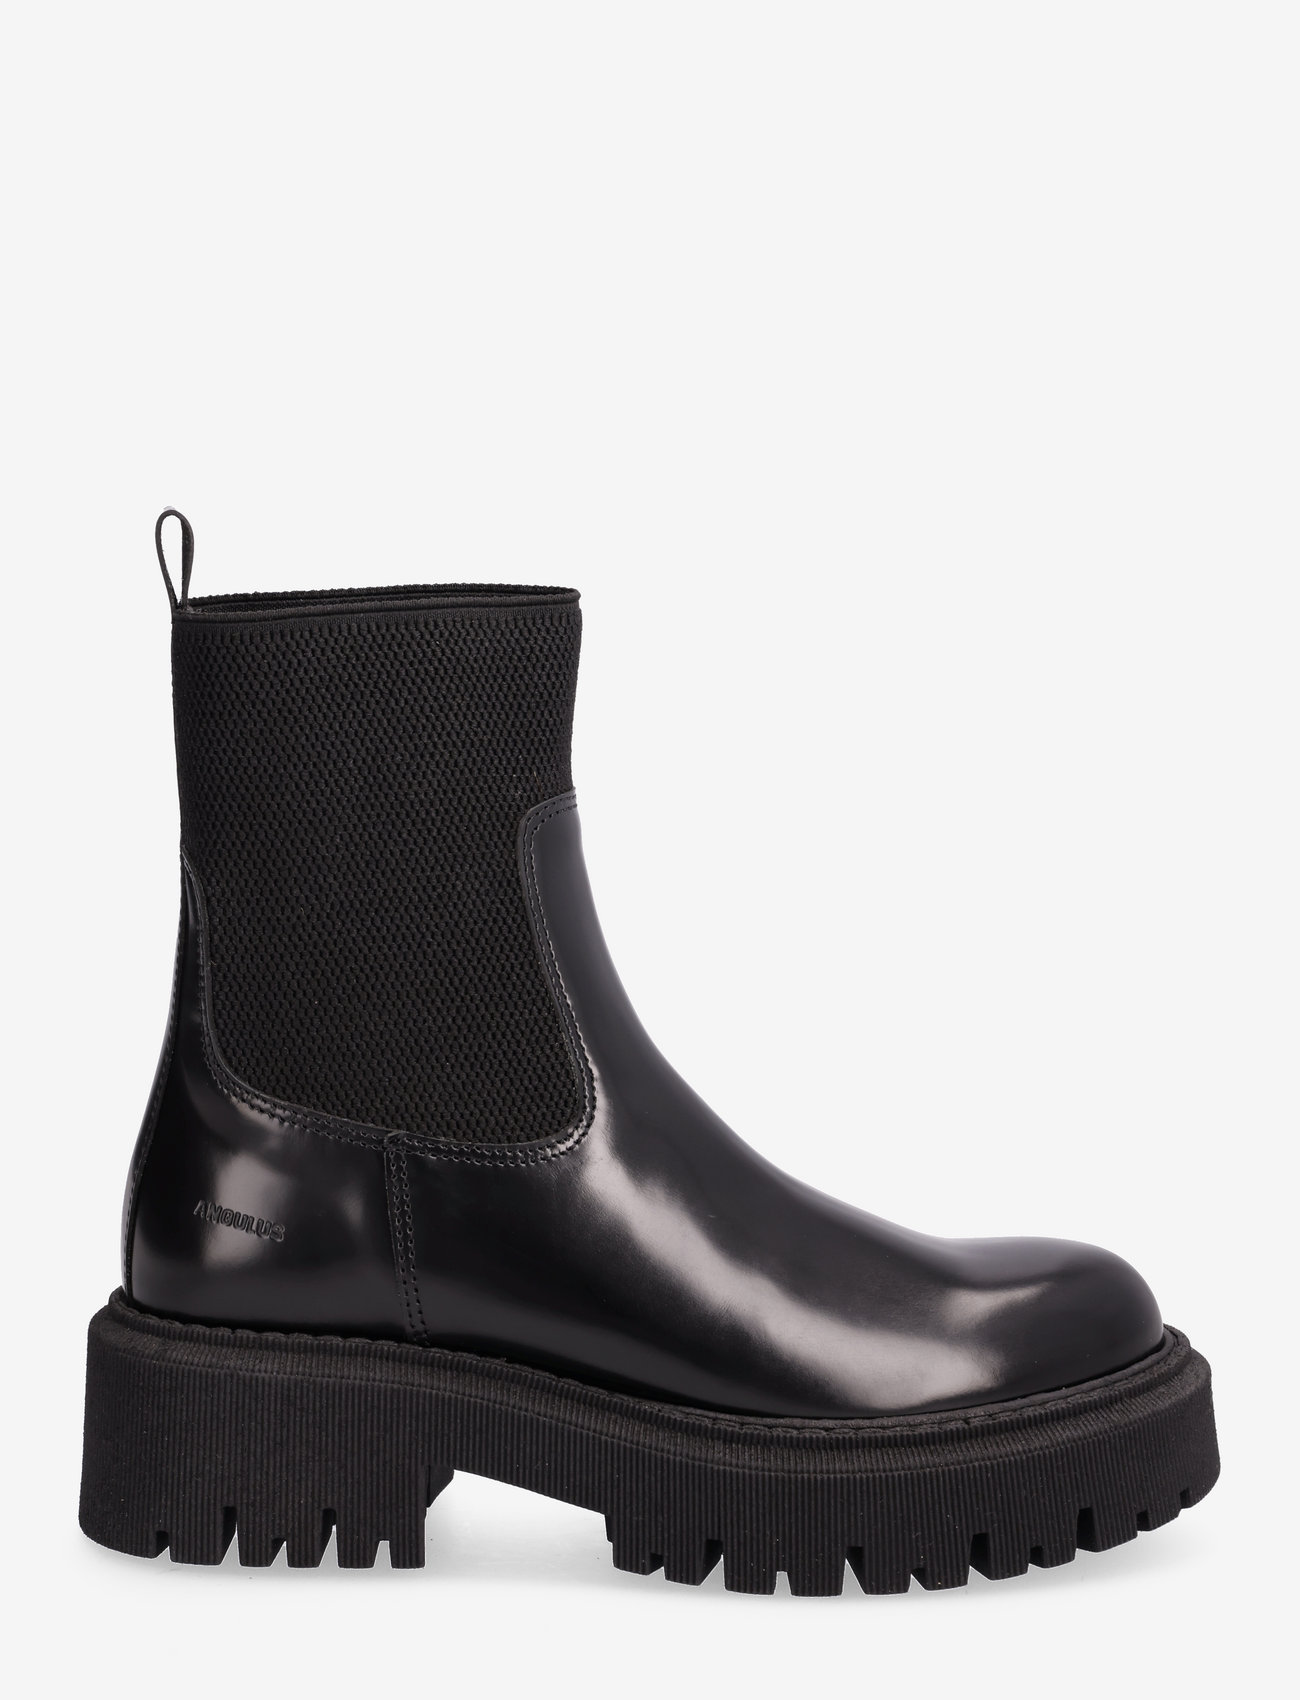 ANGULUS - Boots - flat - flate ankelstøvletter - 1425/053 black/black - 1